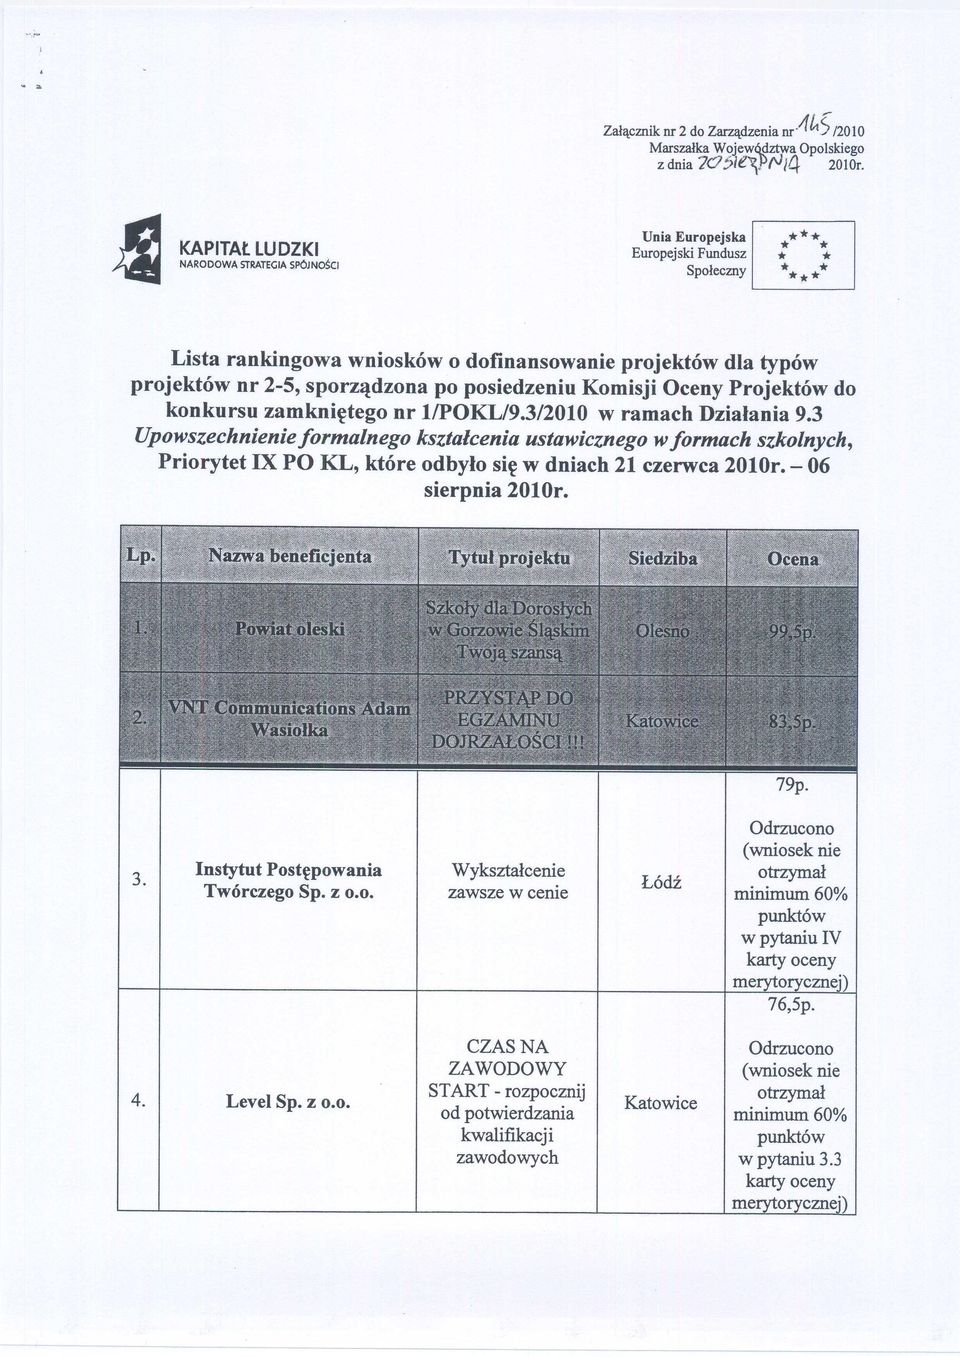 posiedzeniu Komisji Oceny ów do konkursu zamkniętego nr 1/POKL/9.3/2010 w ramach Działania 9.